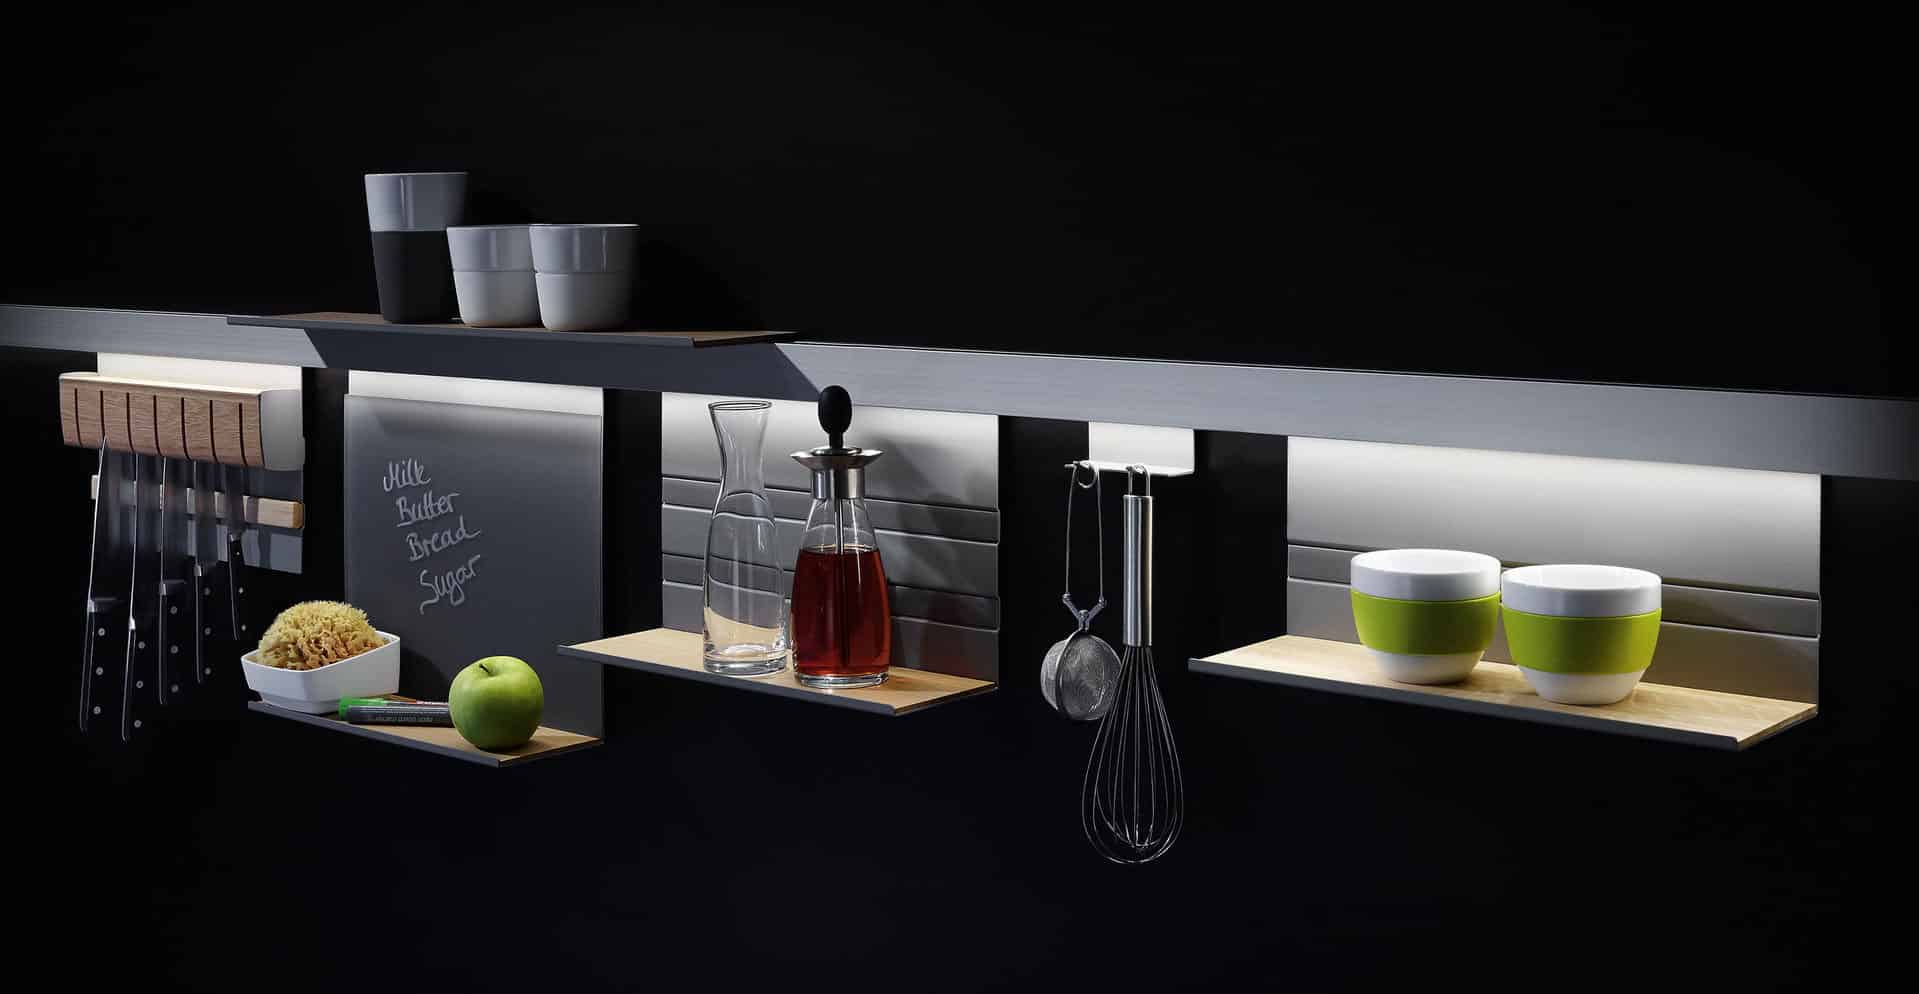 Keuken ophangrek met verlichting voor keukenaccessoires, Linero MosaiQ reling systeem